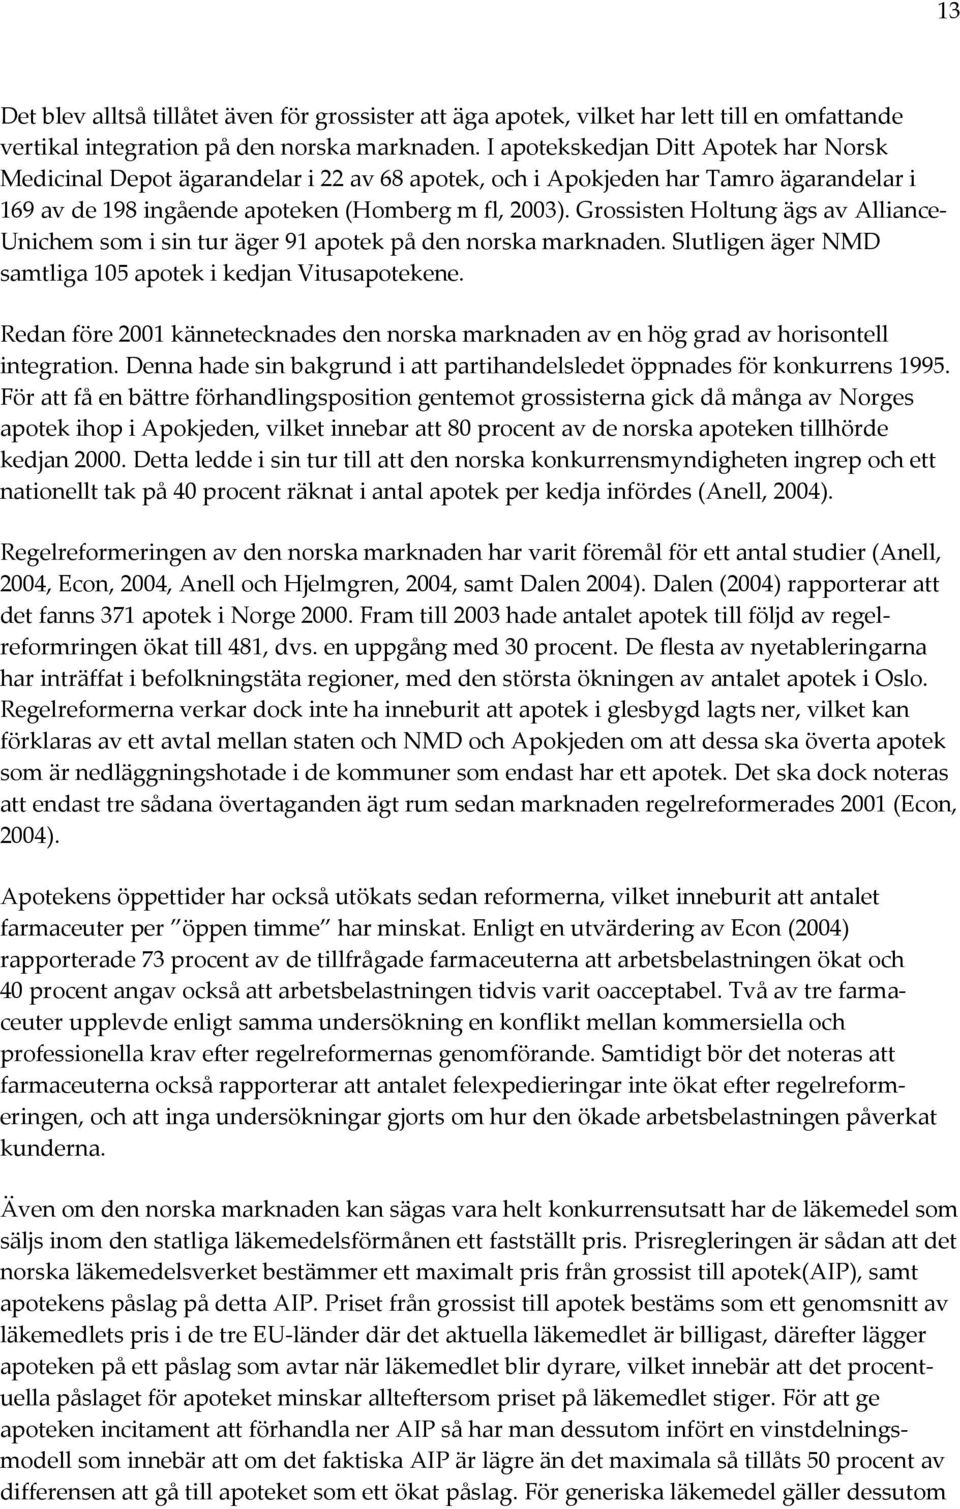 Grossisten Holtung ägs av Alliance- Unichem som i sin tur äger 91 apotek på den norska marknaden. Slutligen äger NMD samtliga 105 apotek i kedjan Vitusapotekene.